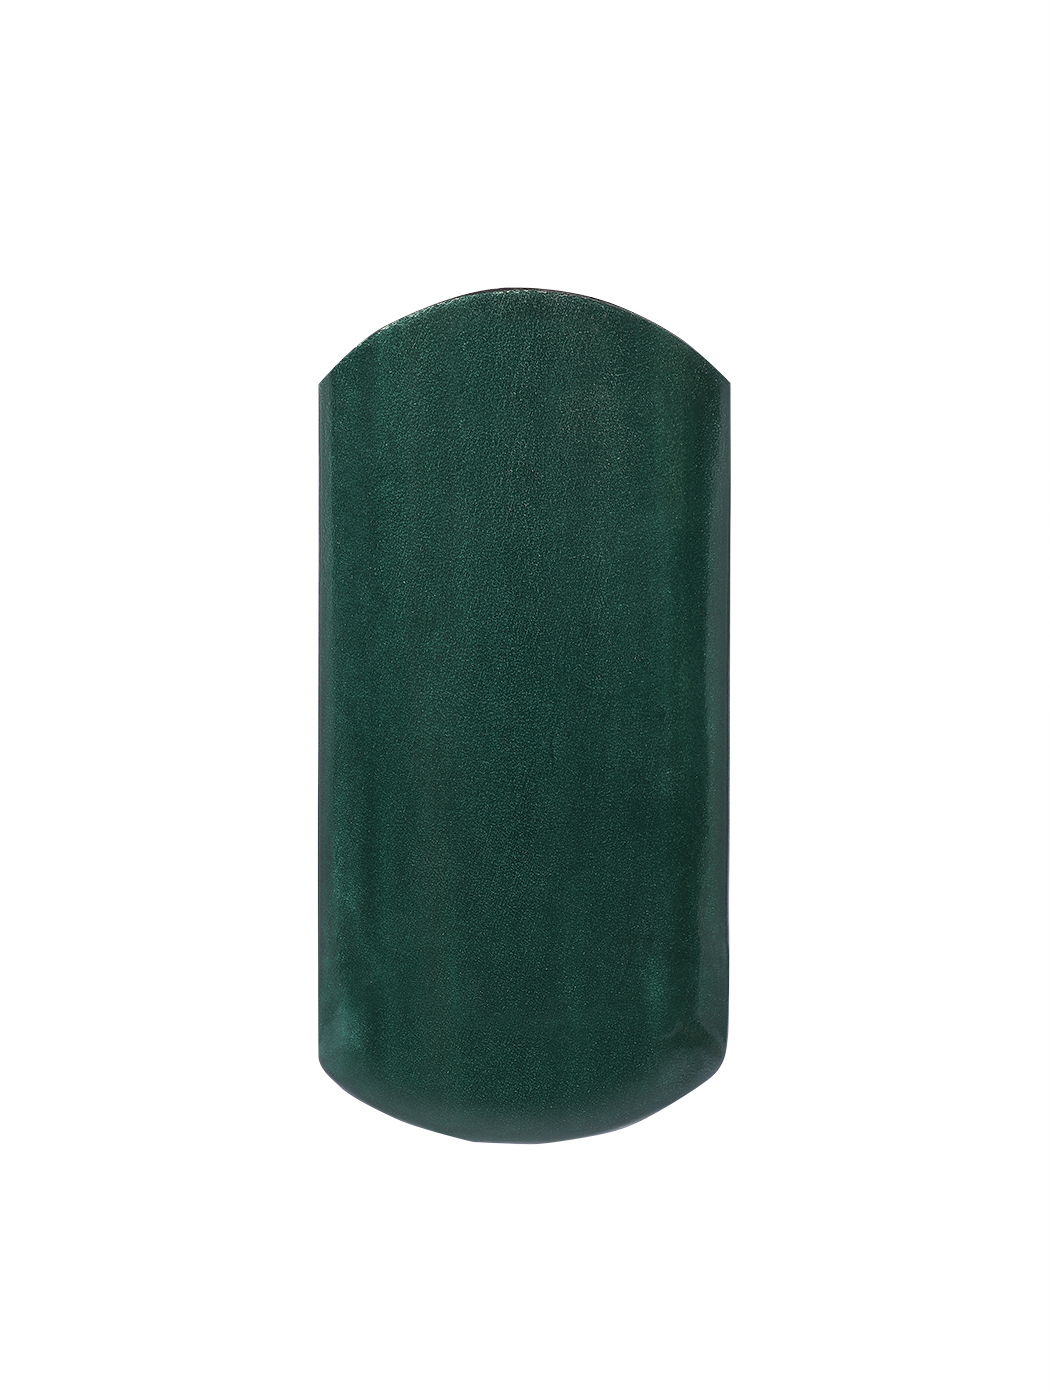 Кожаный футляр для очков ручной работы зеленого цвета